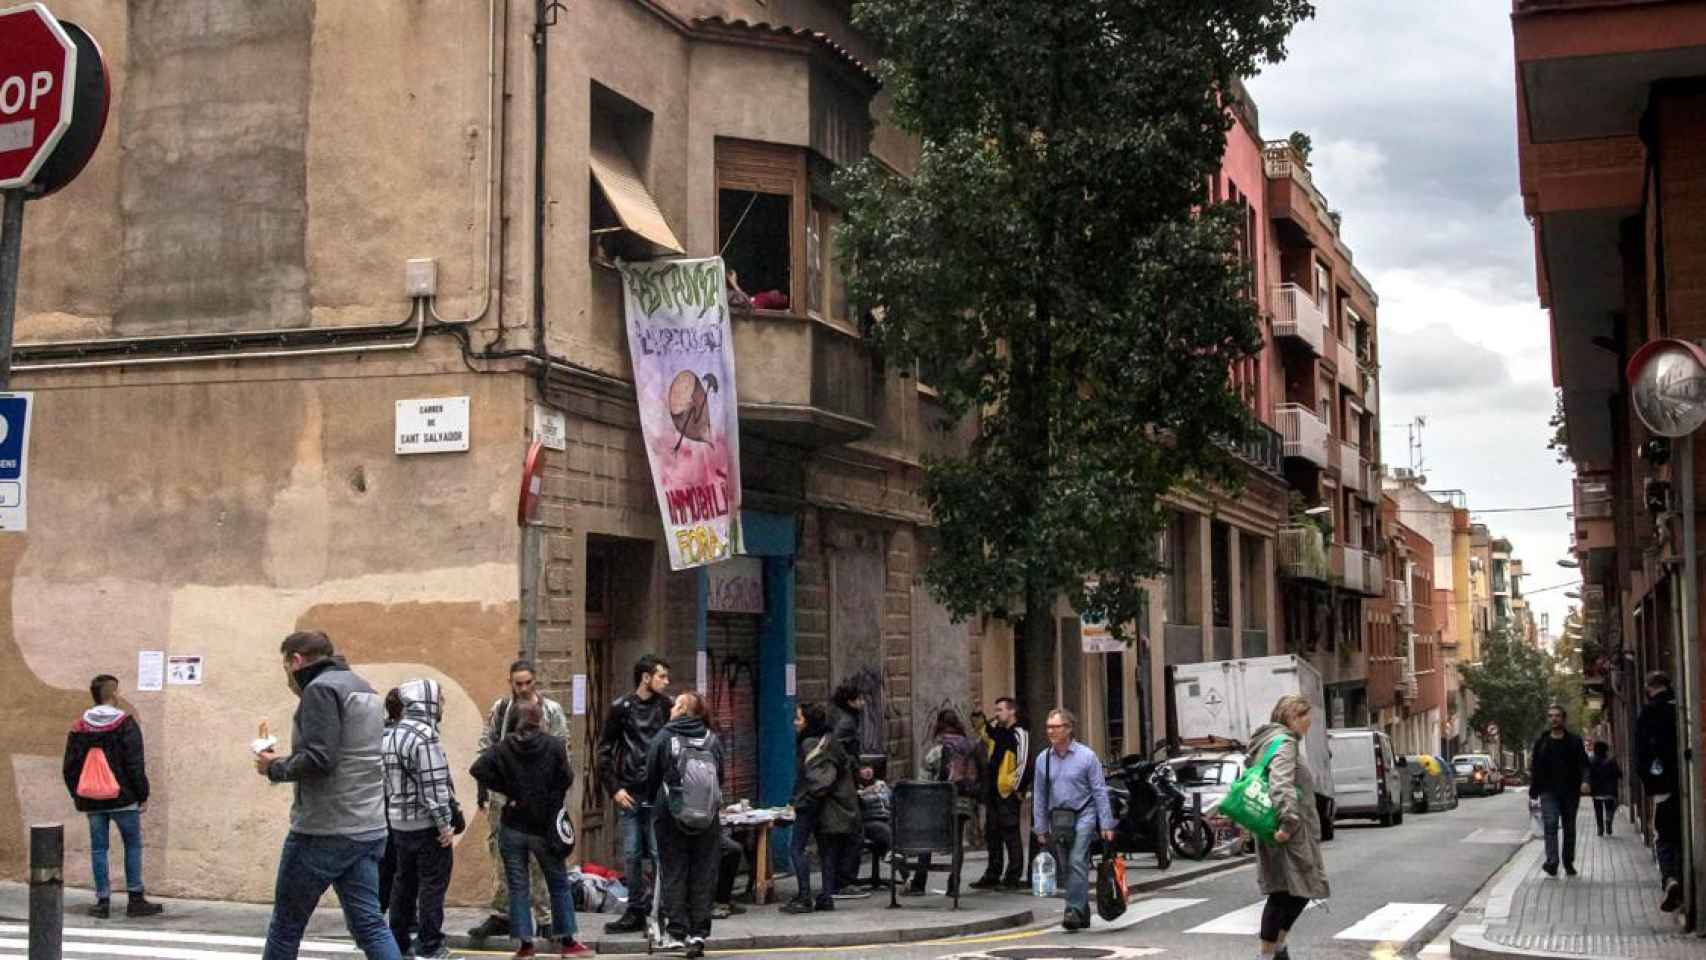 La casa okupa Ka la Kastanya en el barrio de Gràcia, uno de los afectados por las okupaciones / MA